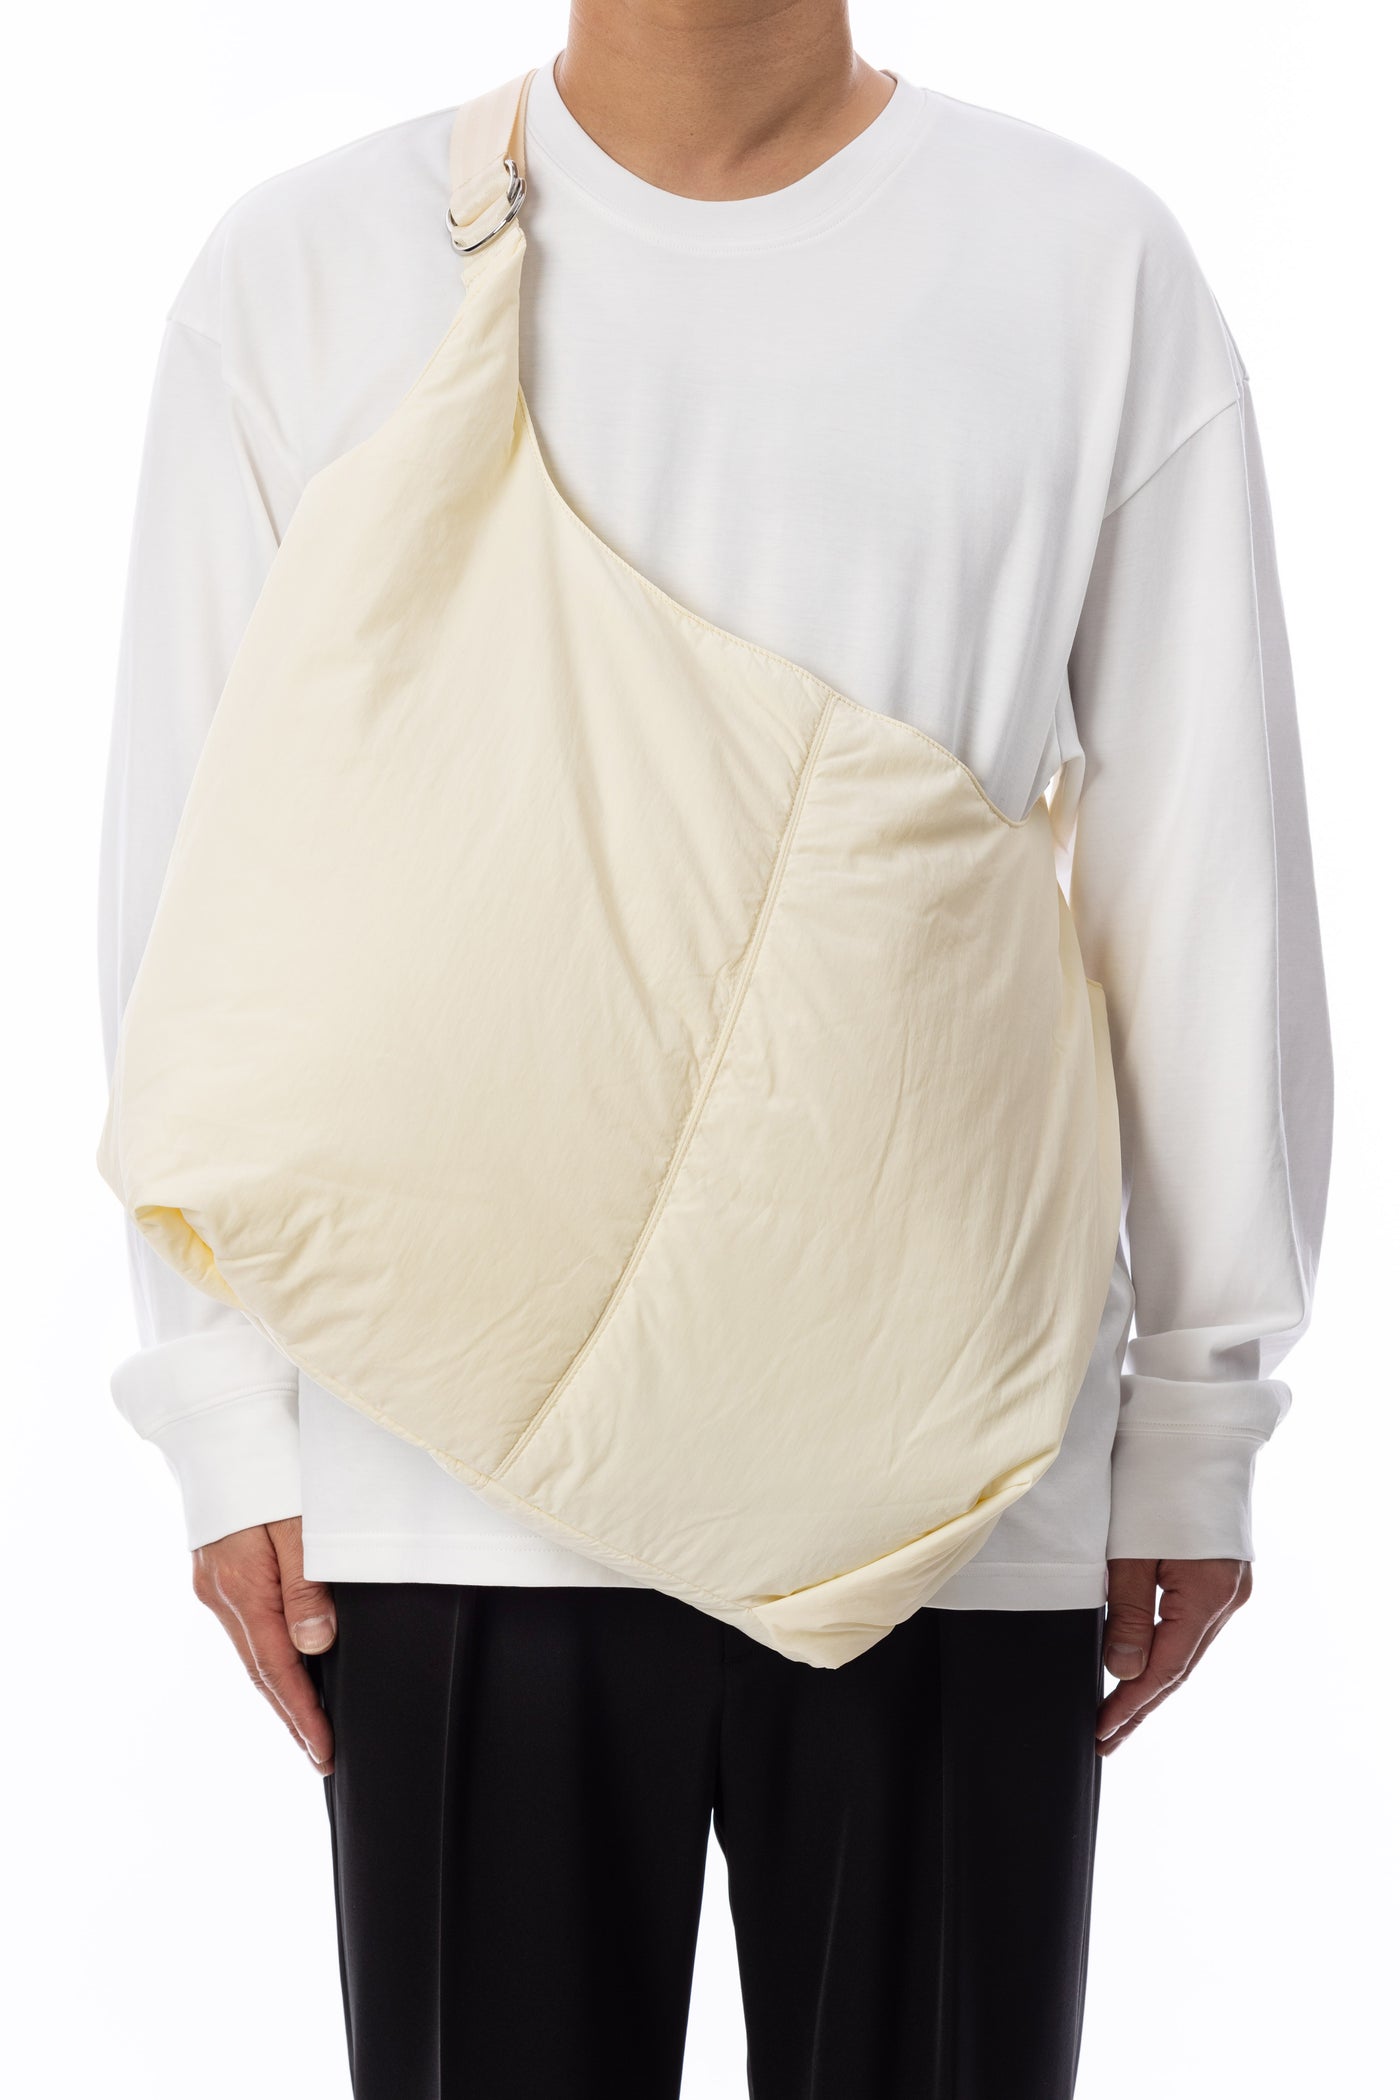 限量产品 AA41-108 填充尼龙天气单肩购物袋